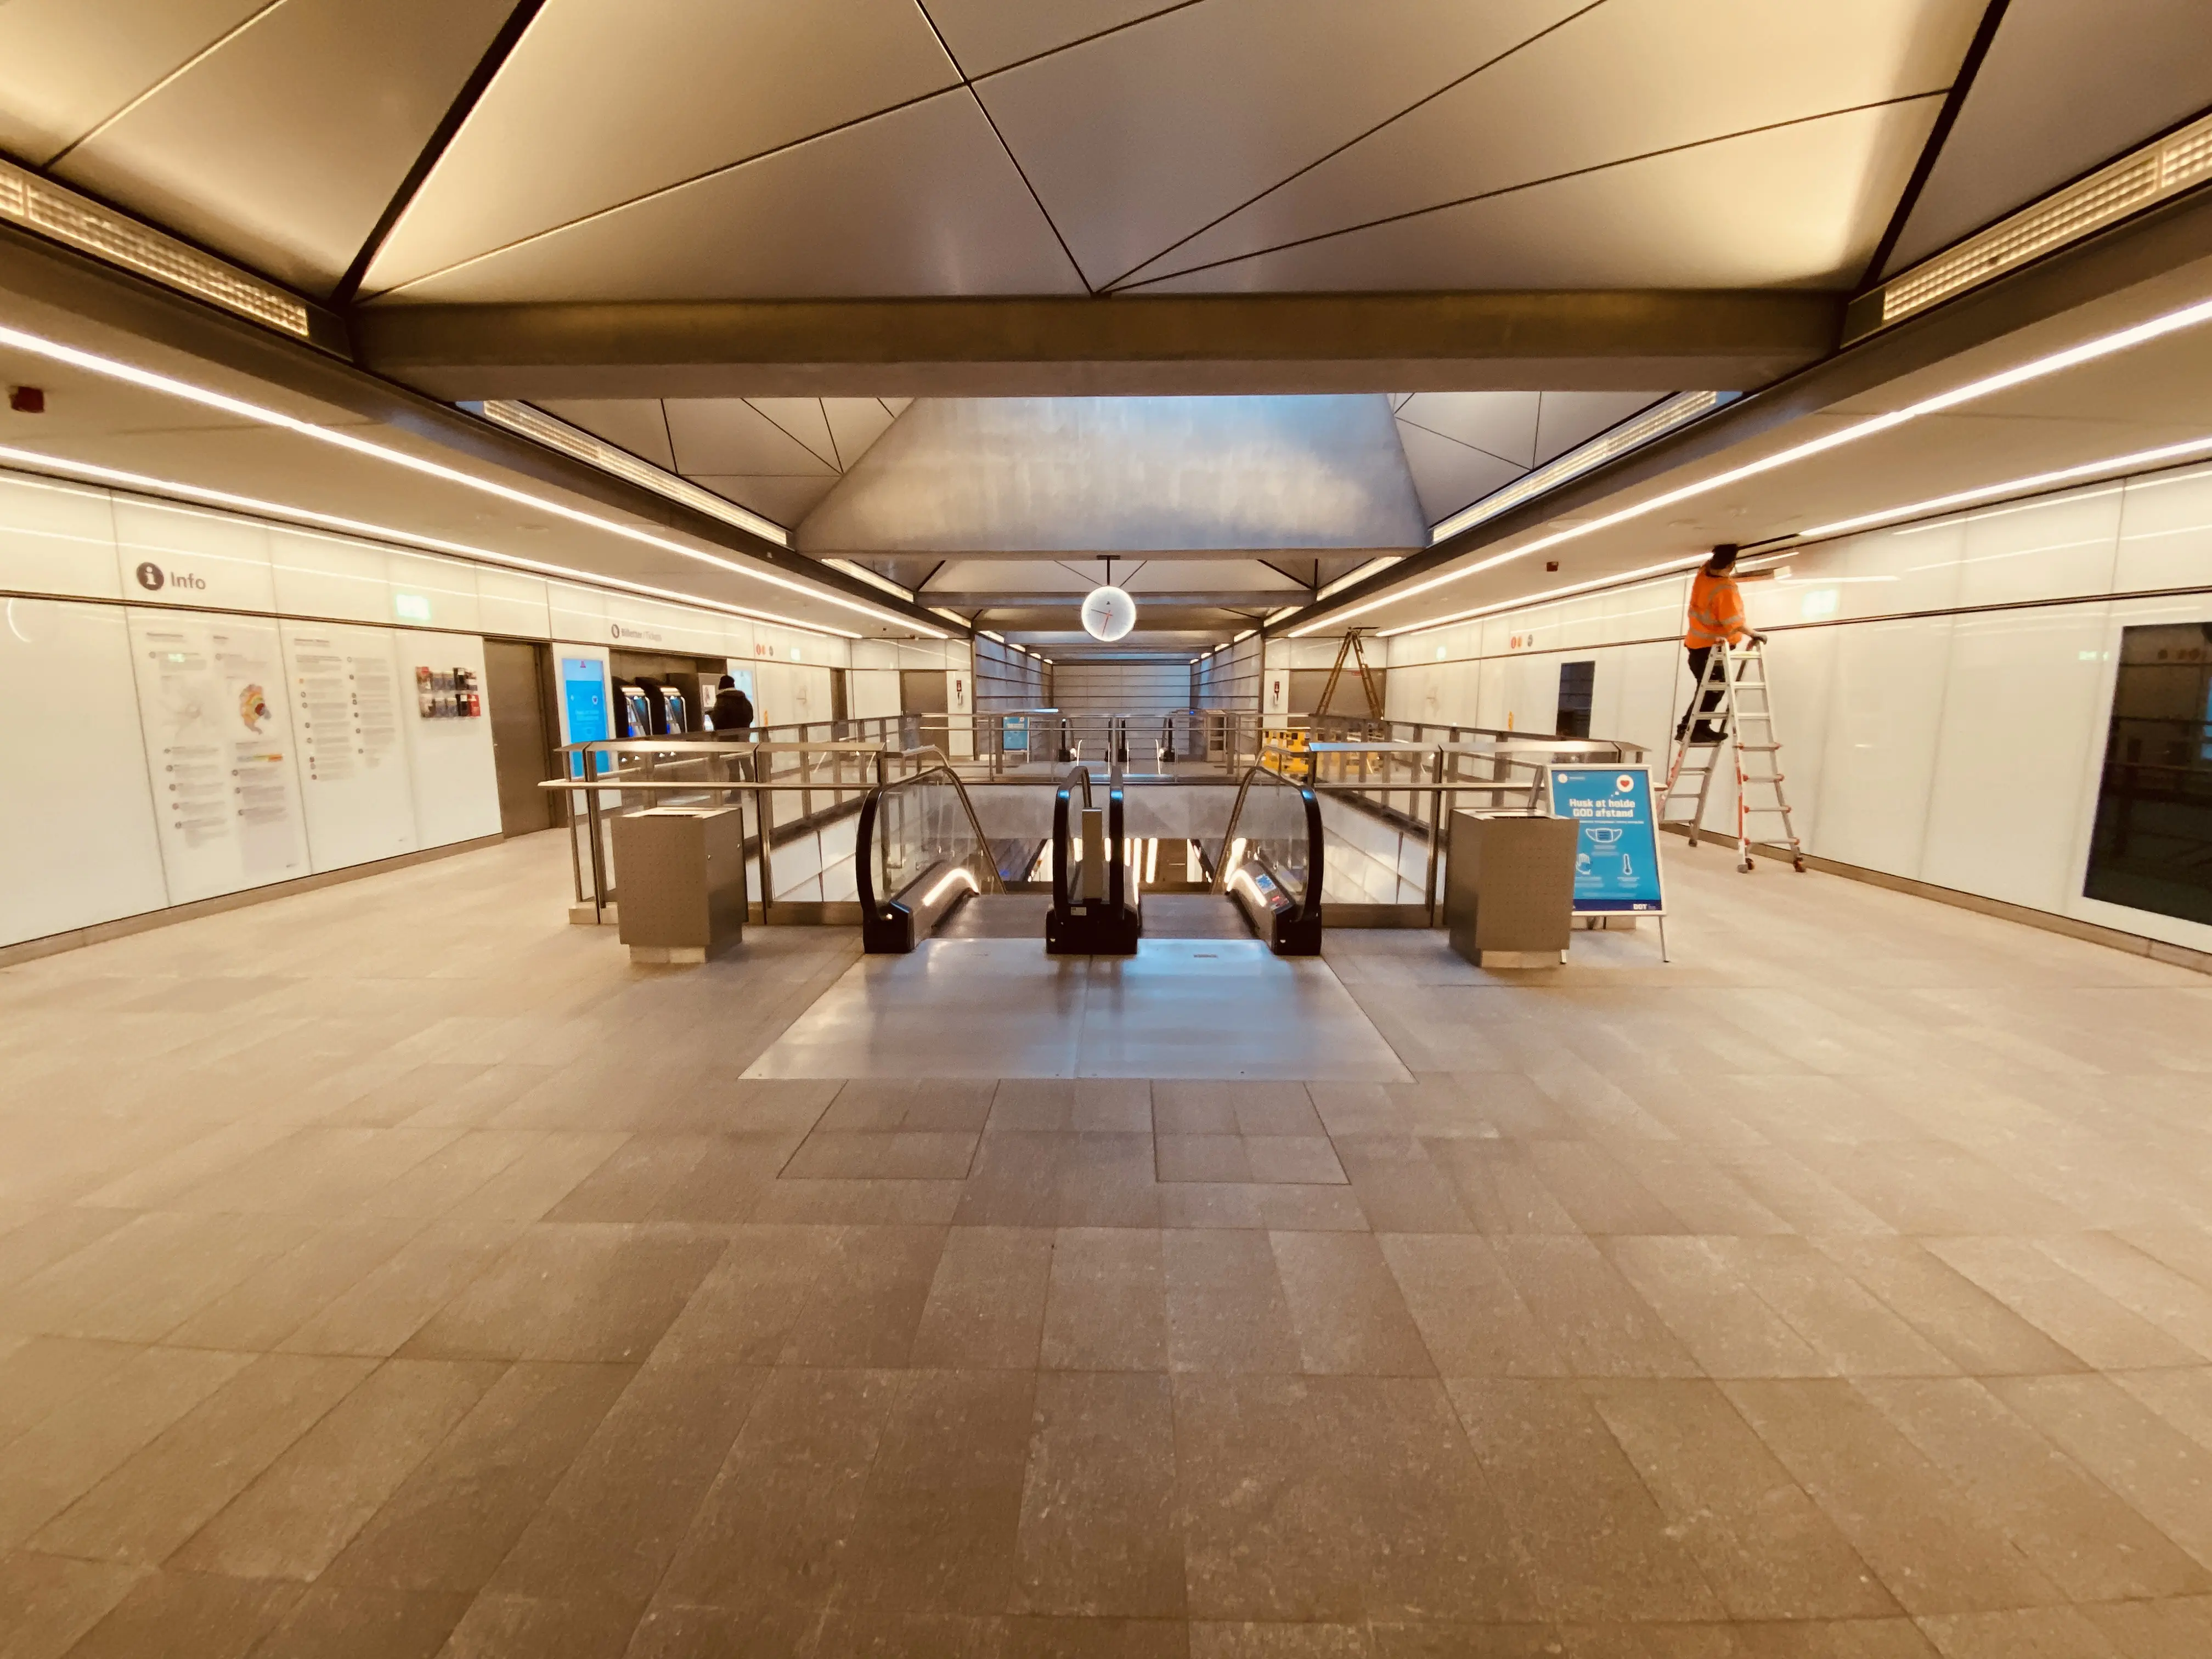 Billede af Vibenshus Runddel Metrostation.